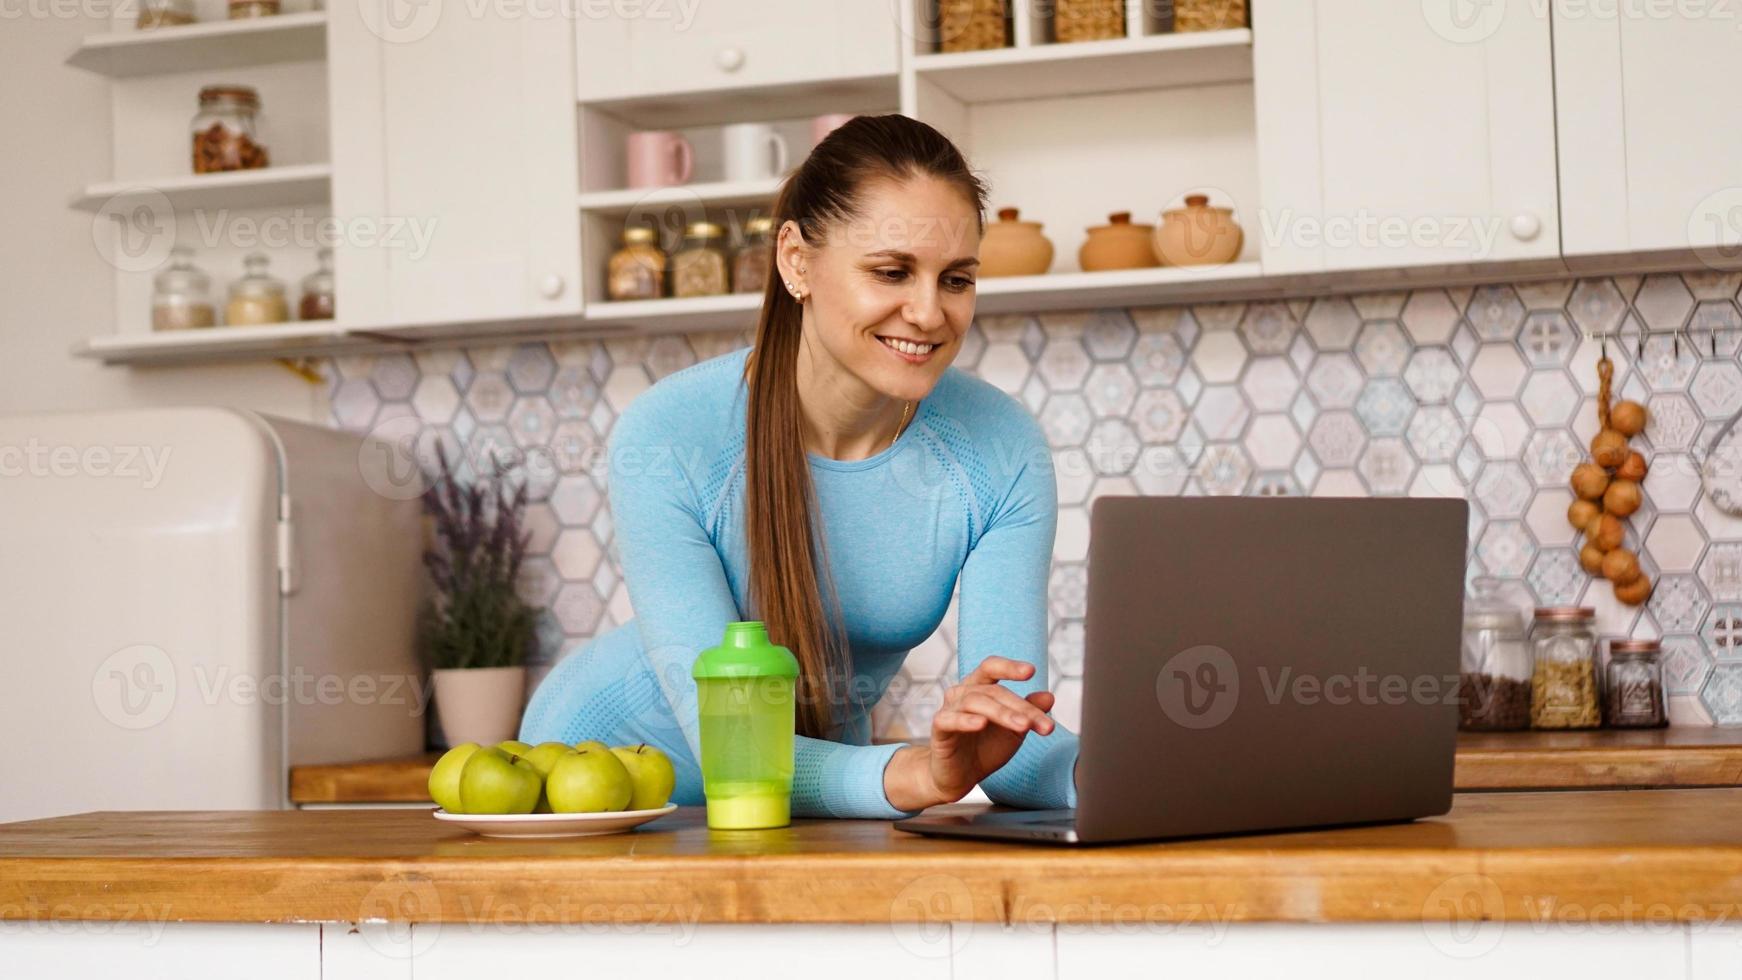 mulher sorridente usando computador em cozinha moderna foto